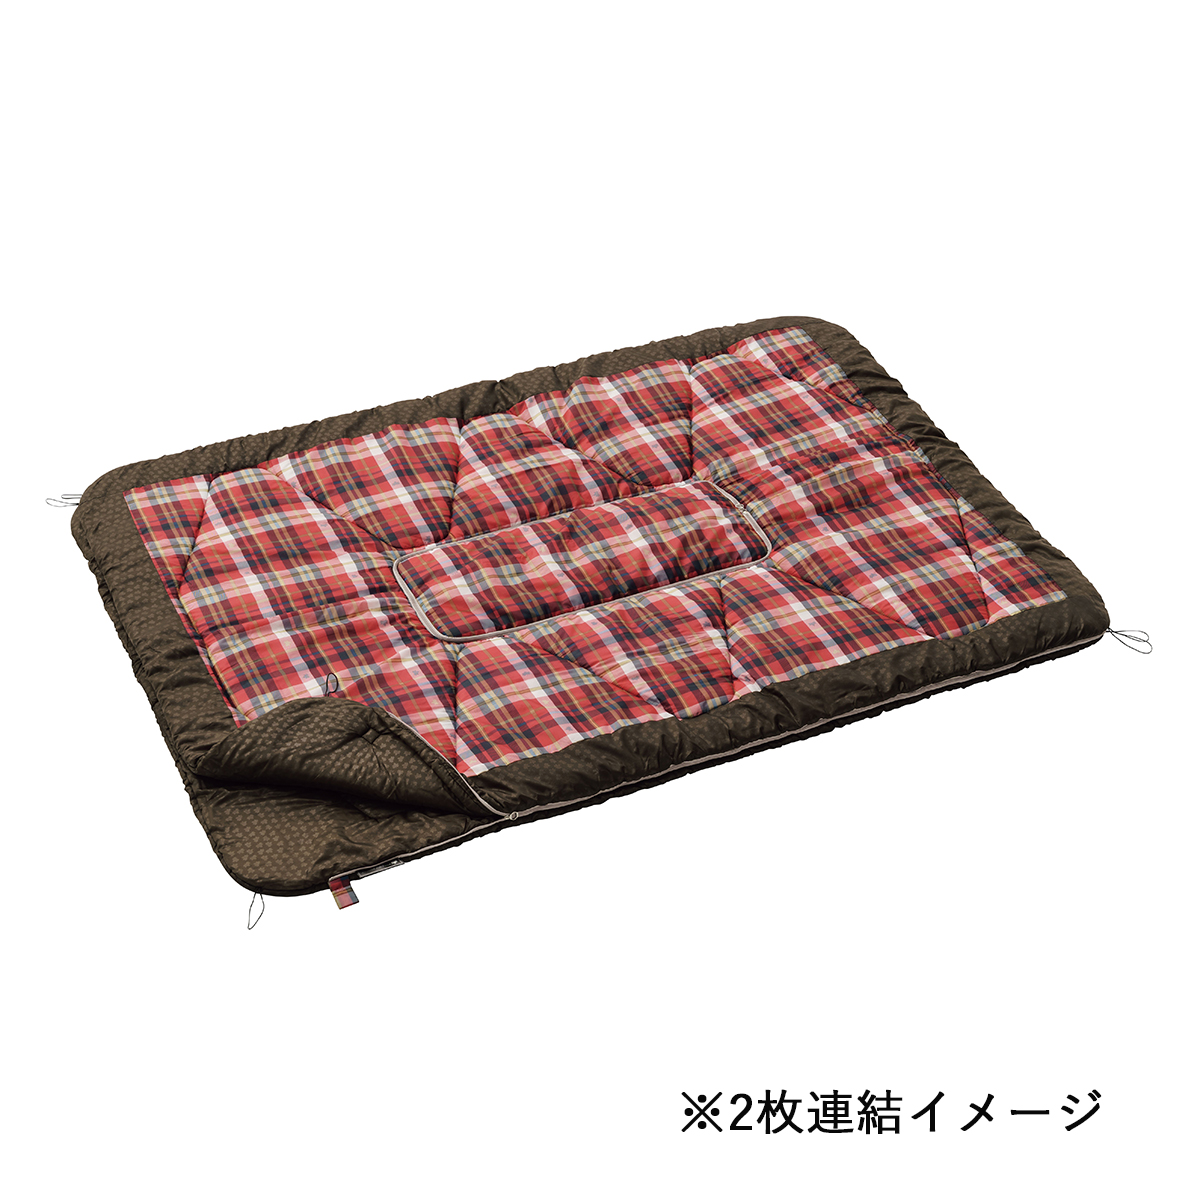 こたつ布団シュラフ12060|ギア|寝具|シュラフ|製品情報|ロゴスショップ 